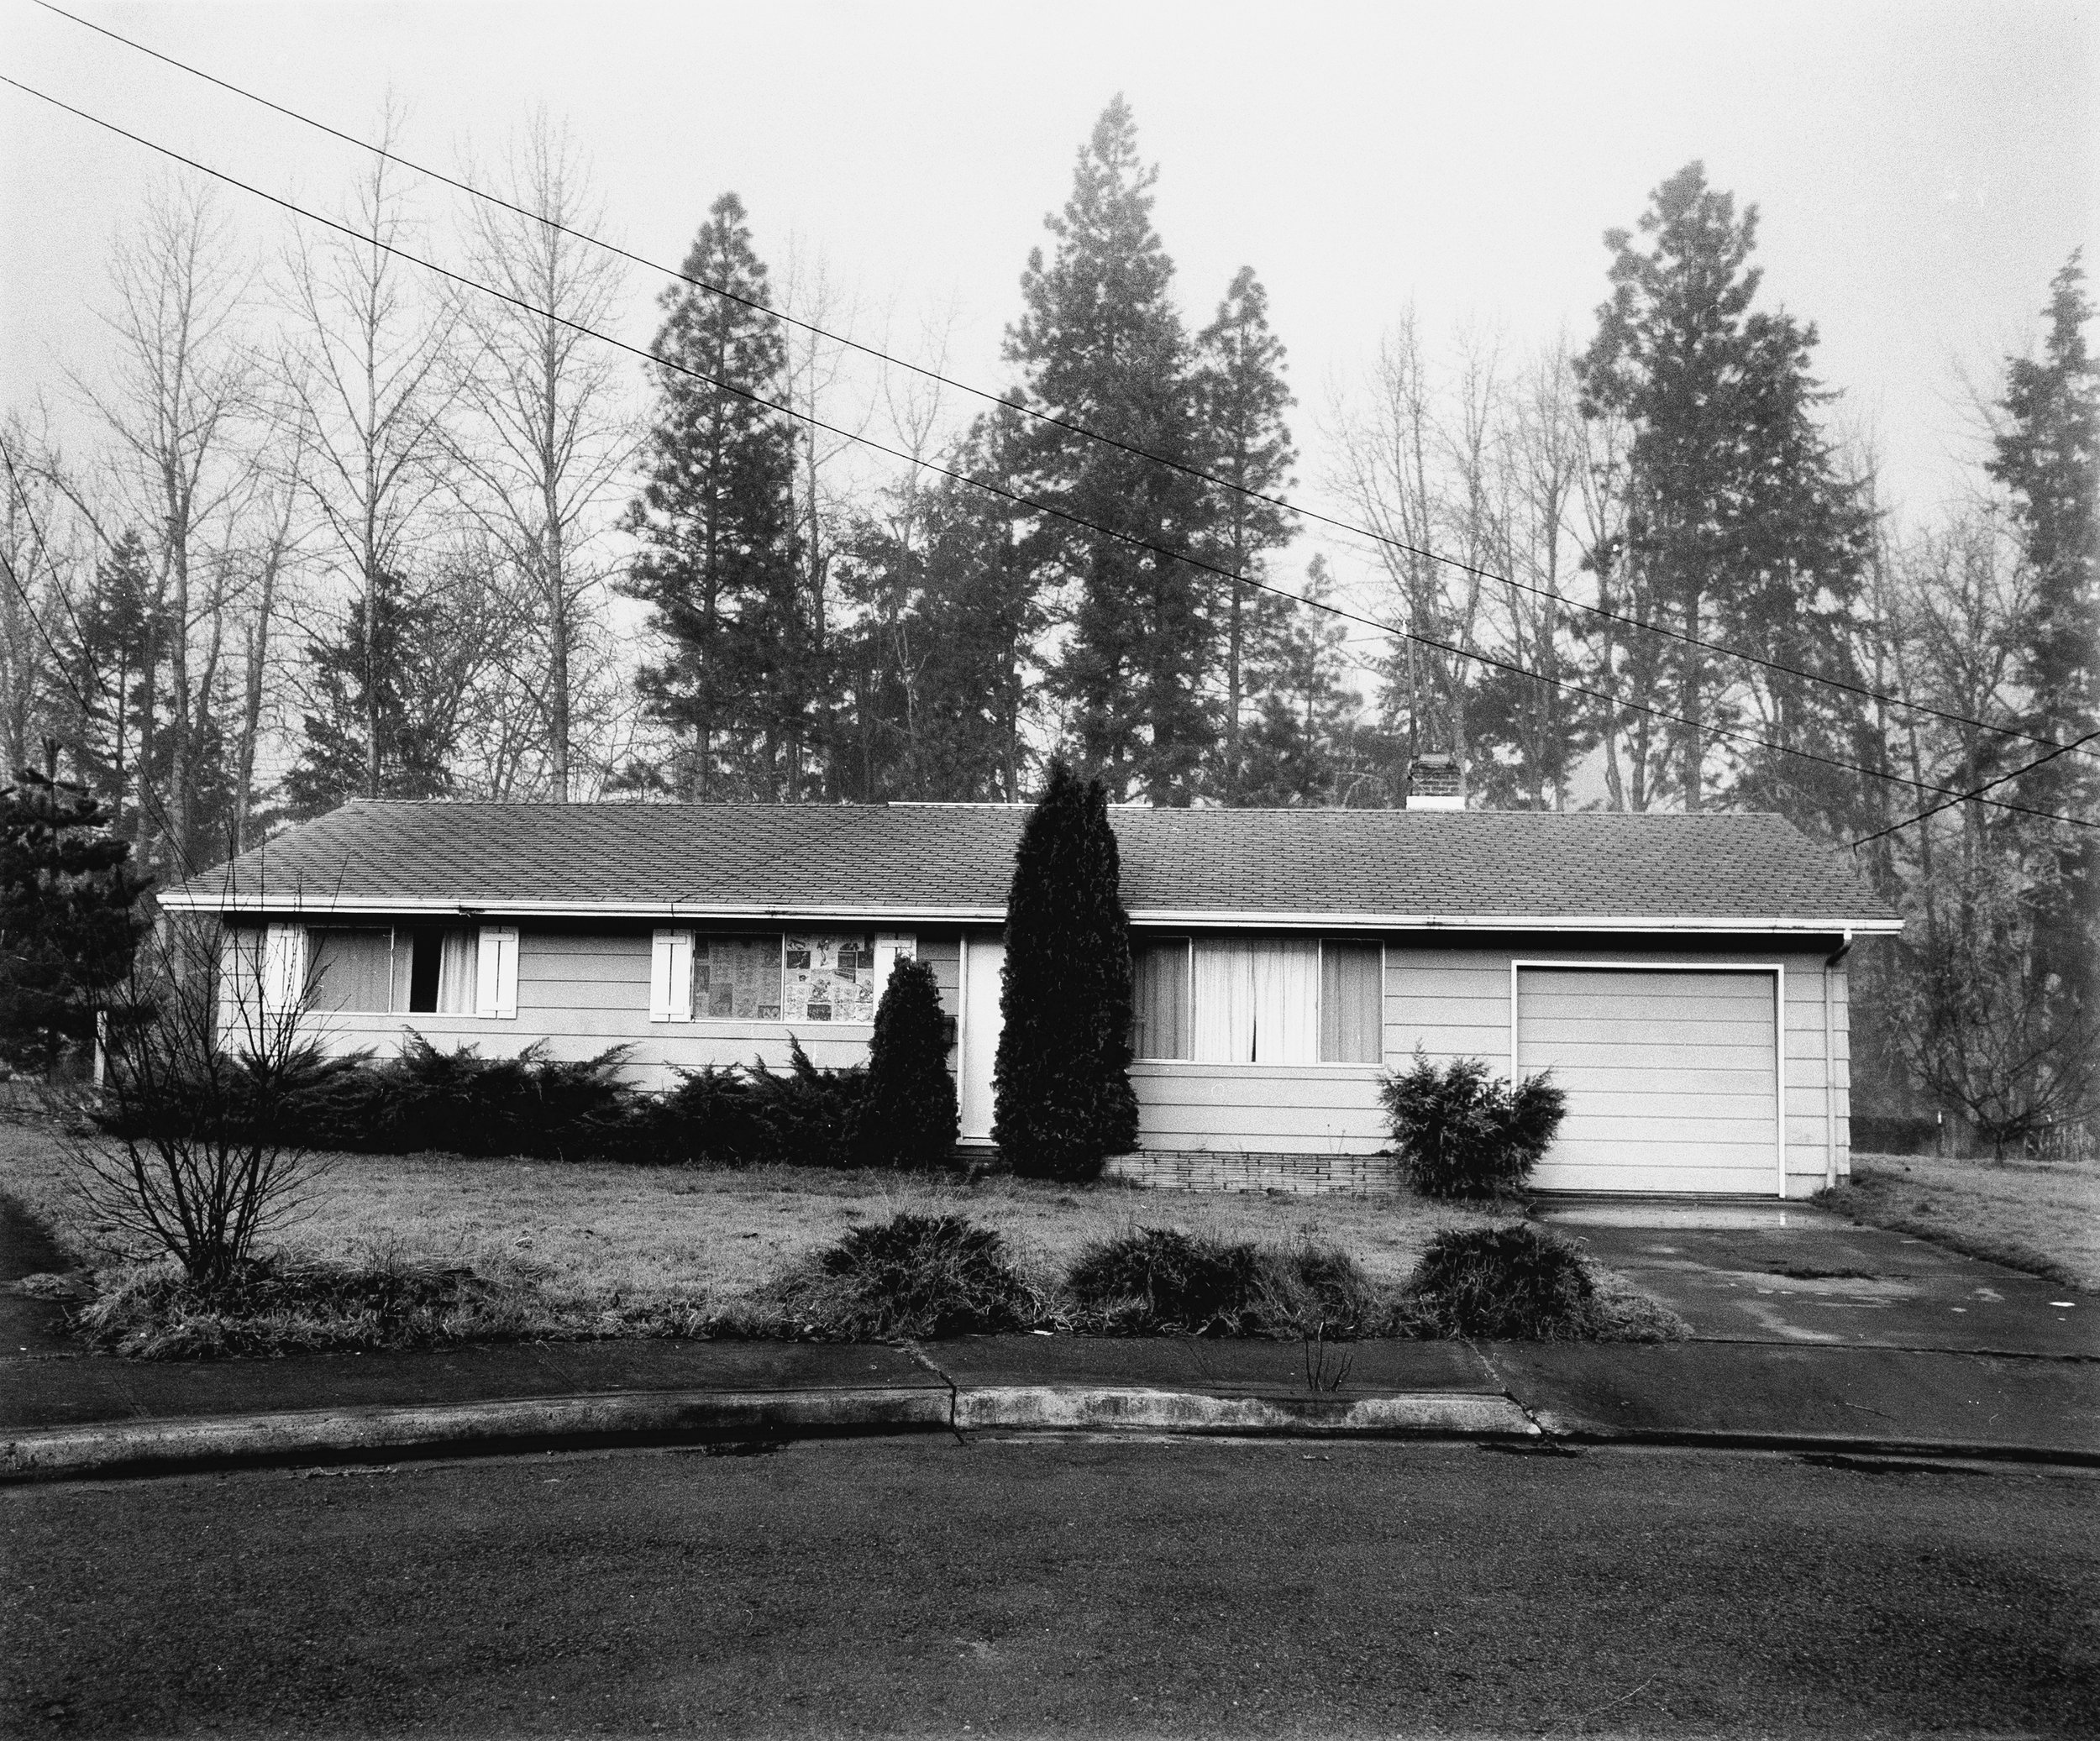   Suburban House, Eugene, Oregon, 1975  